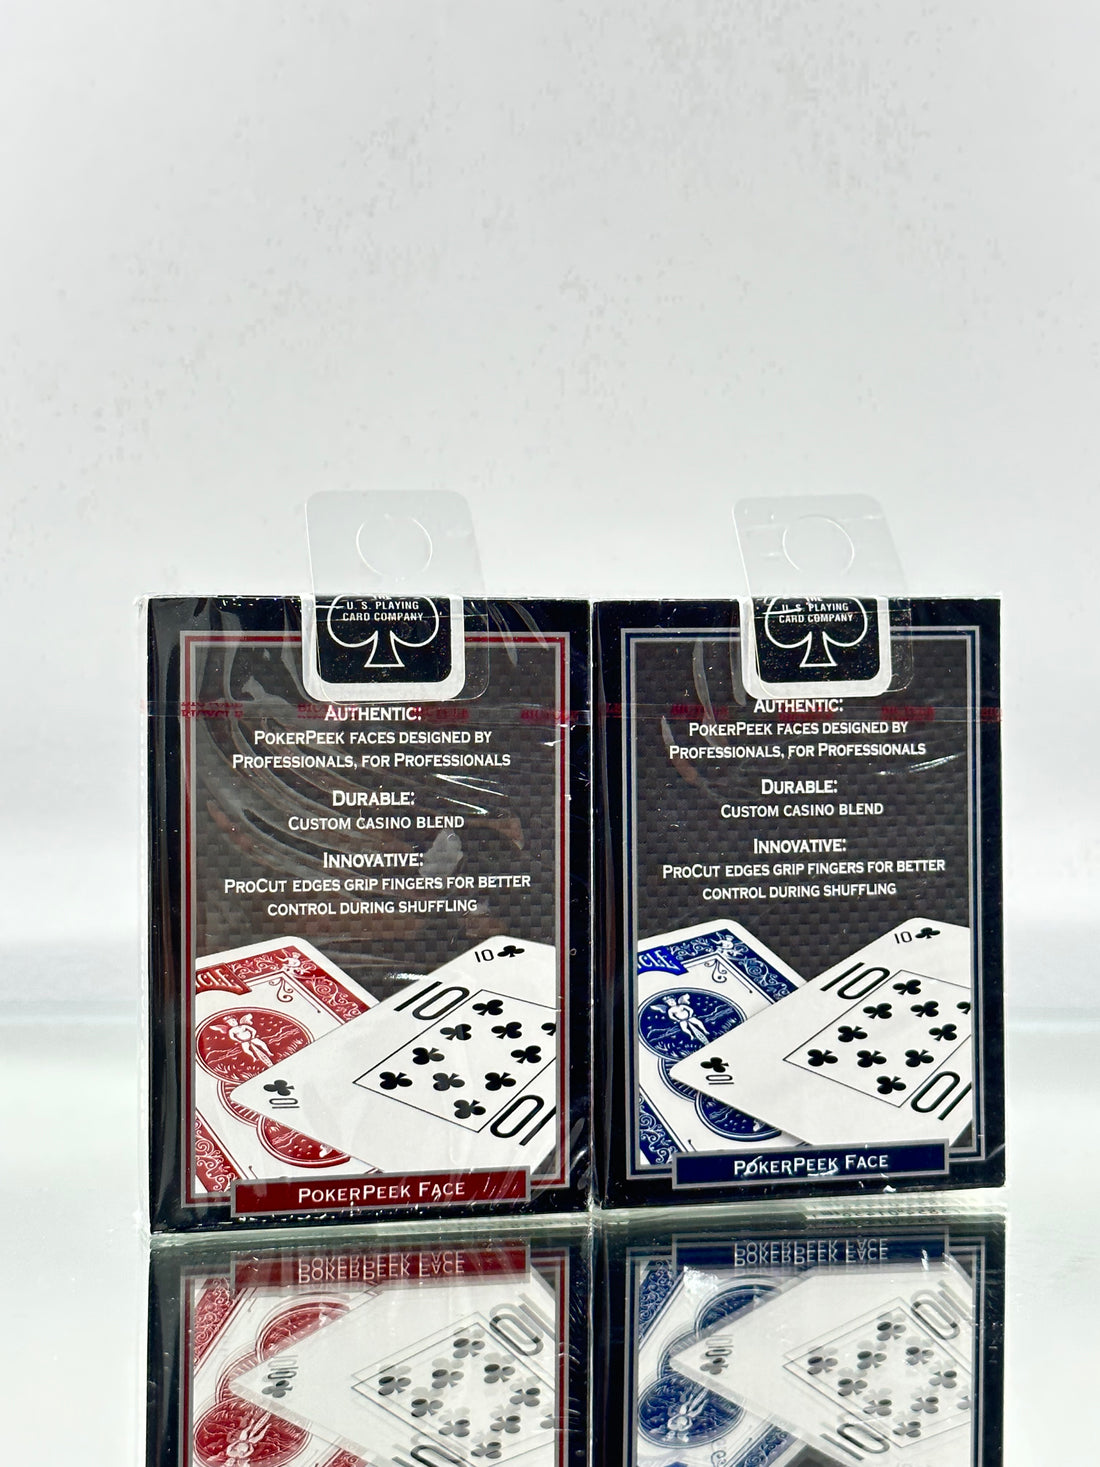 Bicycle Pro Poker Peek 2 Deck Set Playing Cards